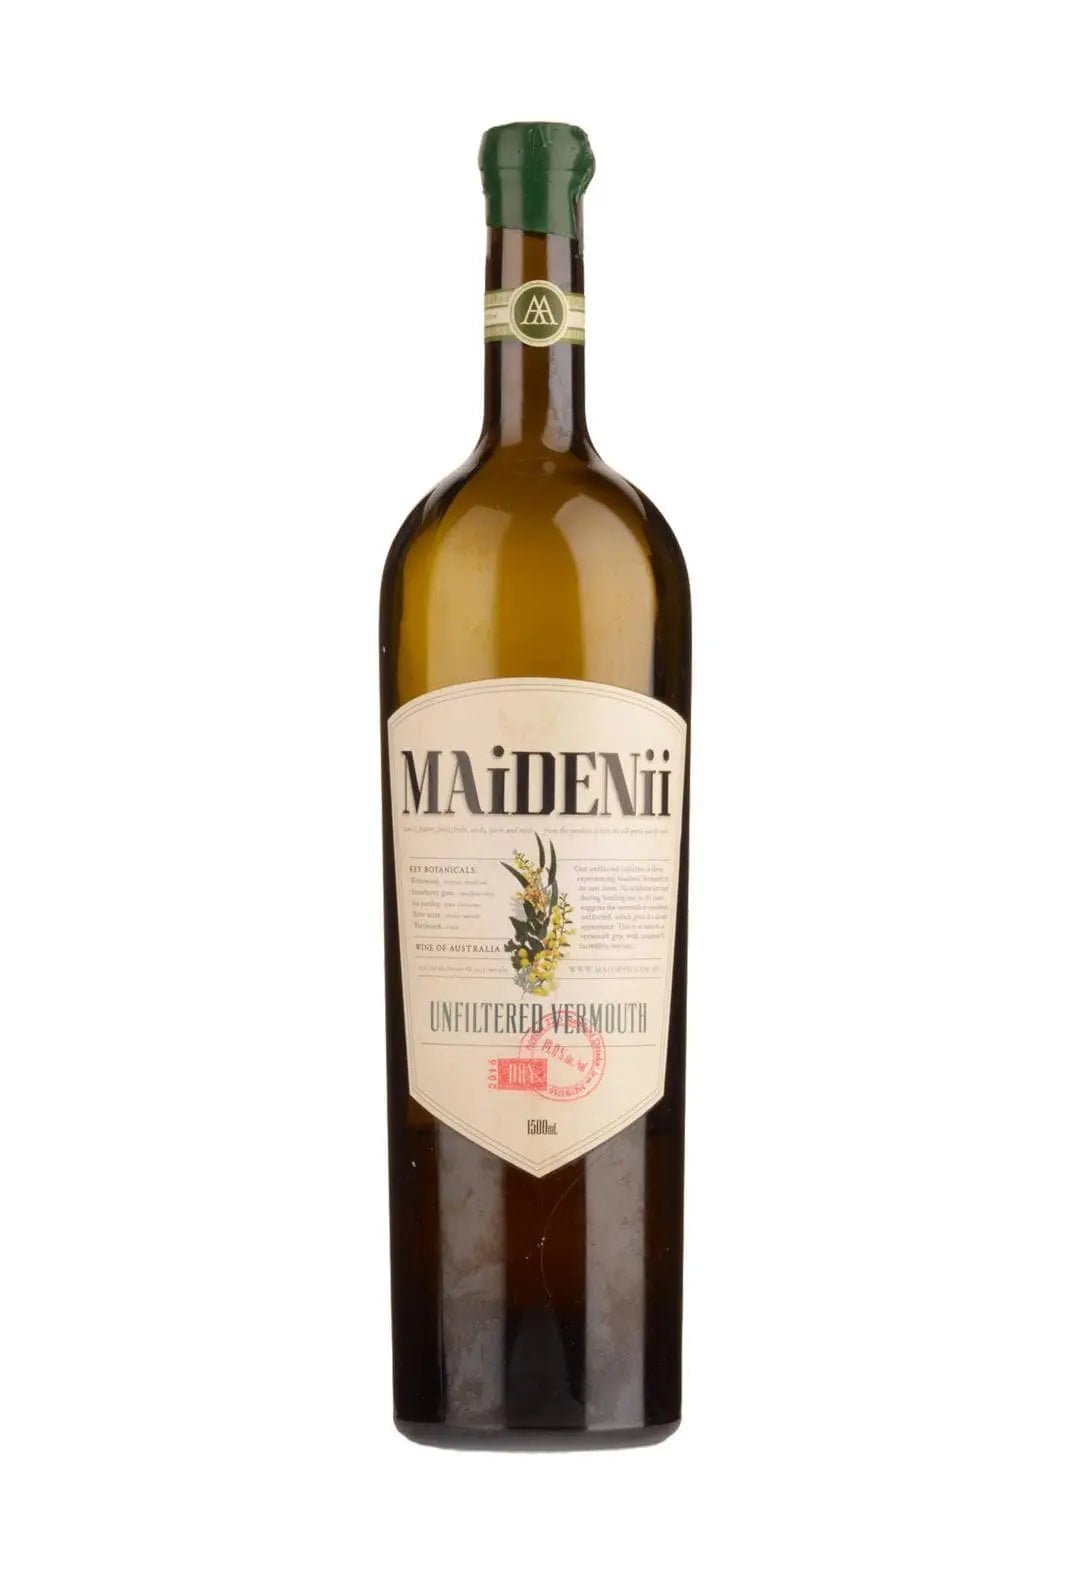 Maidenii Classic Vermouth 2017 Unfiltered 17.5% 1500ml - Liquor & Spirits - Liquor Wine Cave